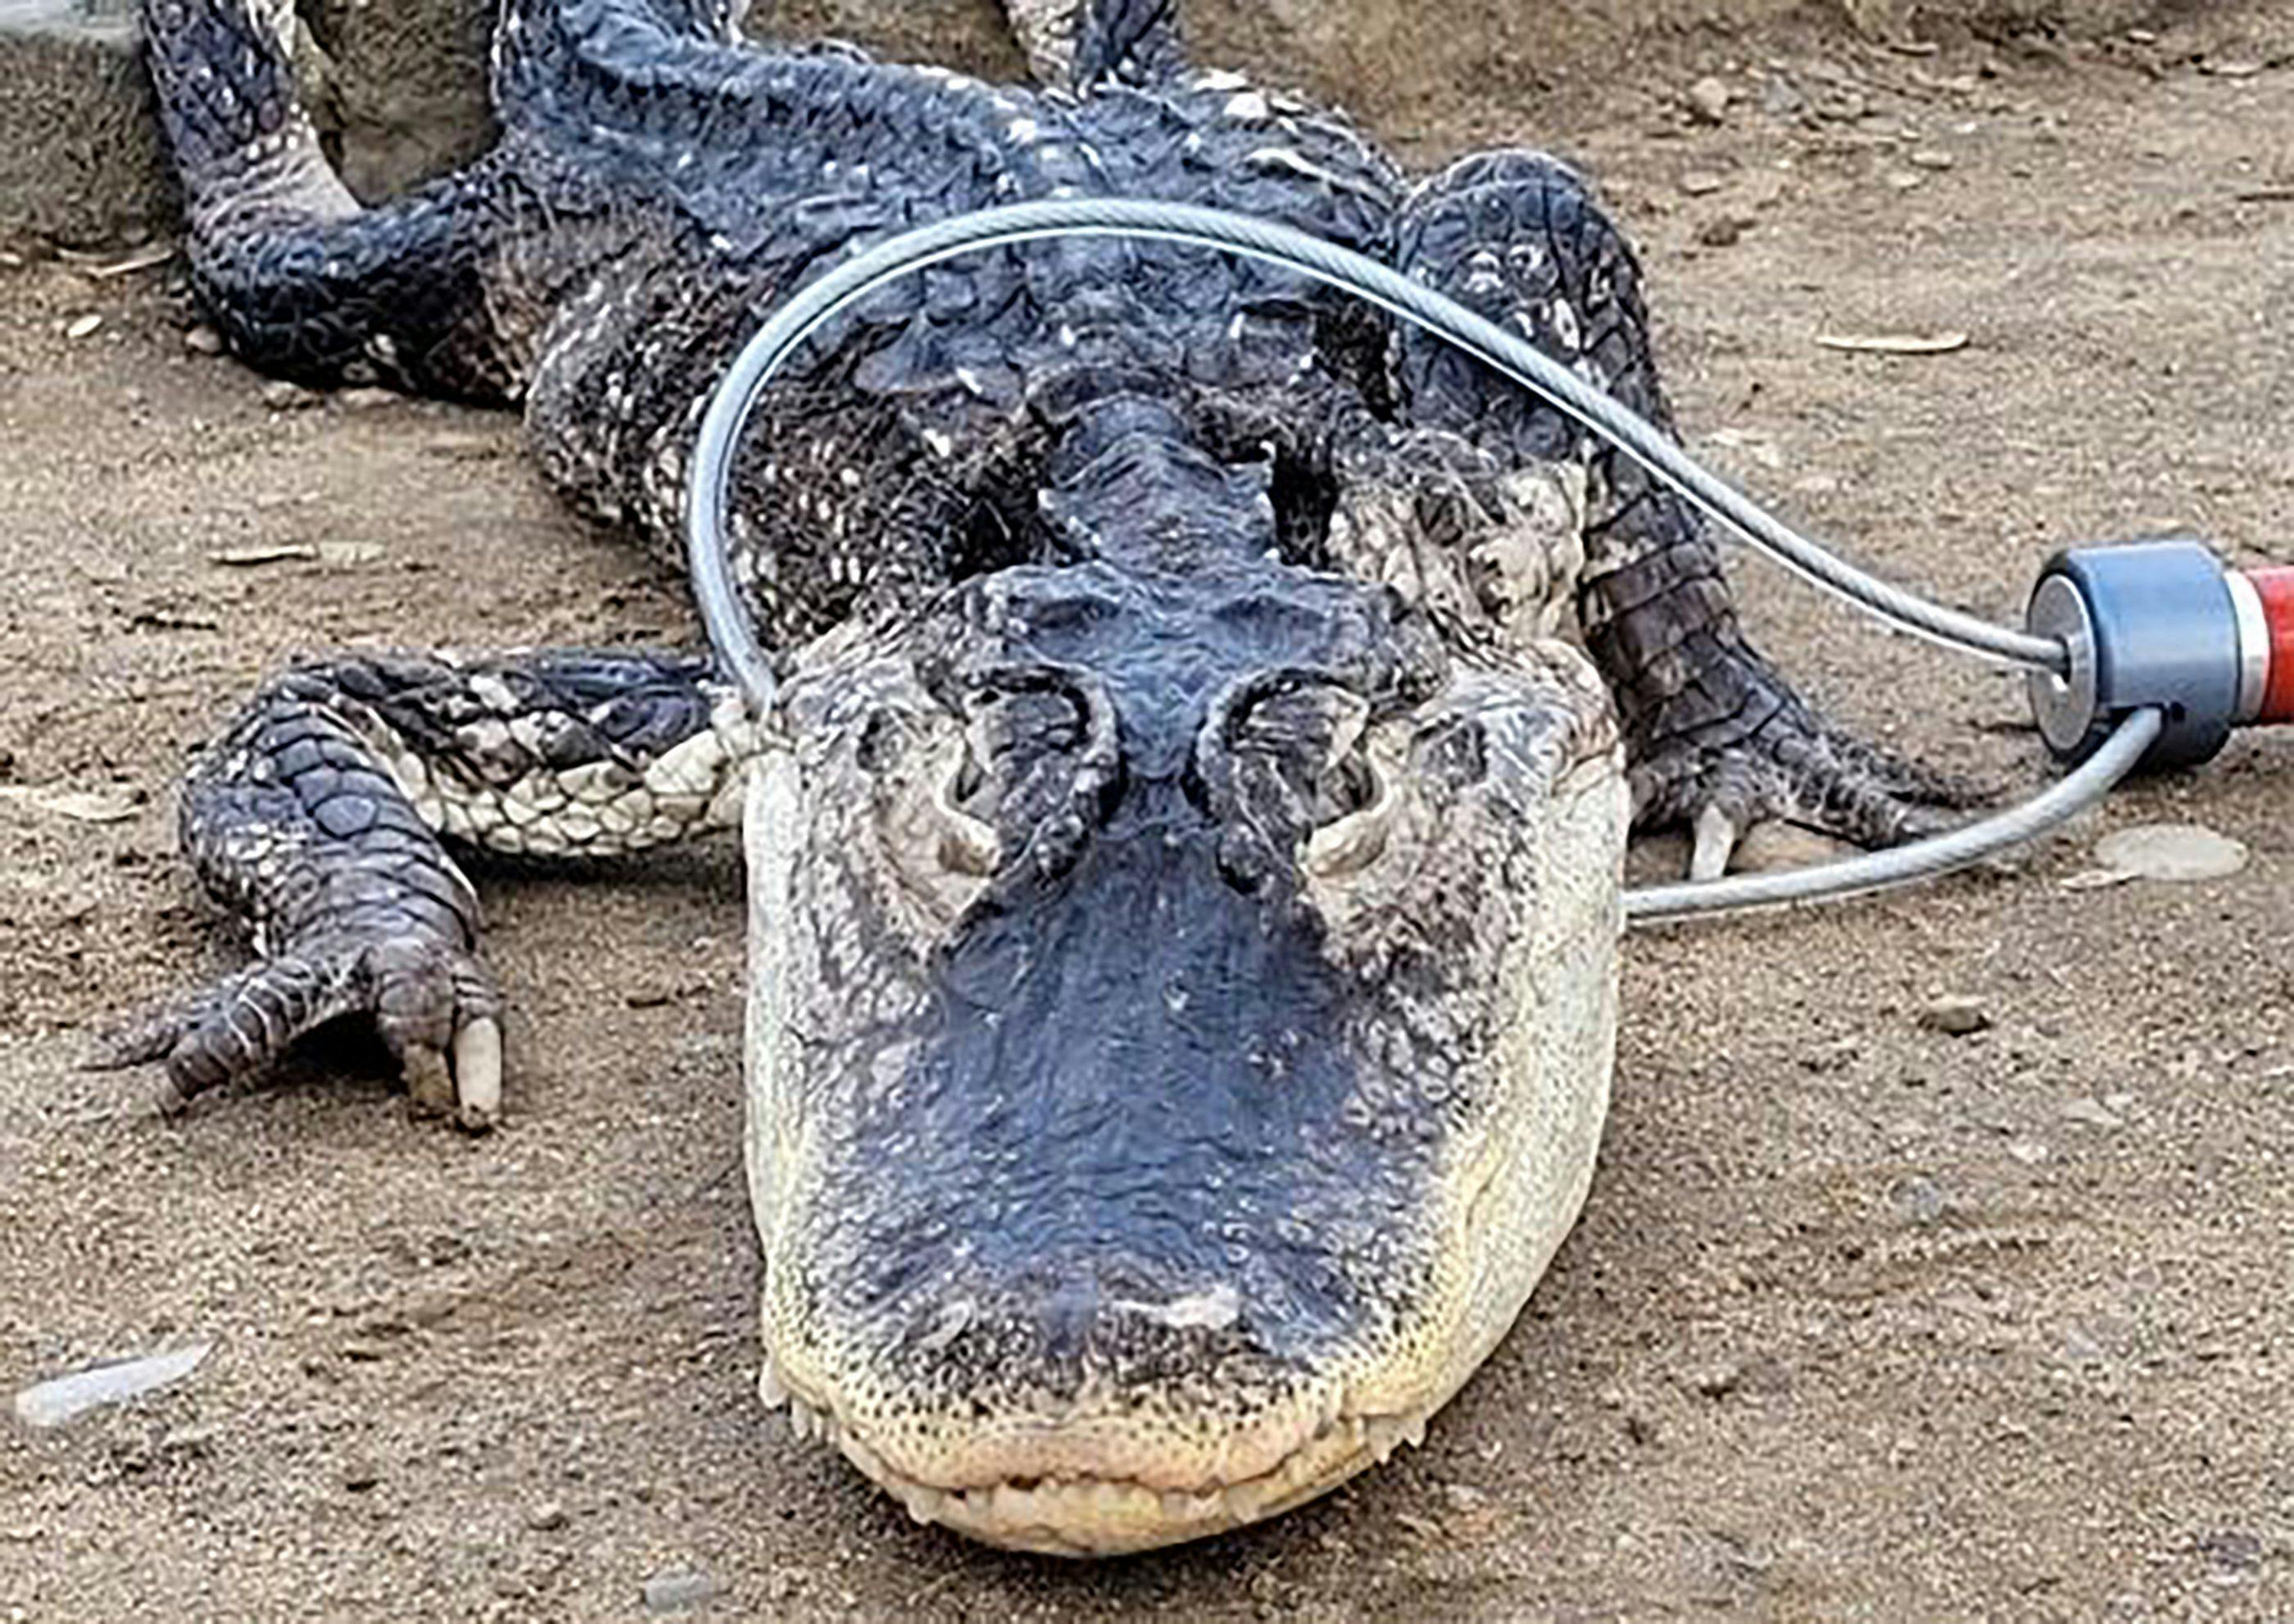 Det formodes, at alligatoren har været et kæledyr, der er blevet forladt ved søen.
